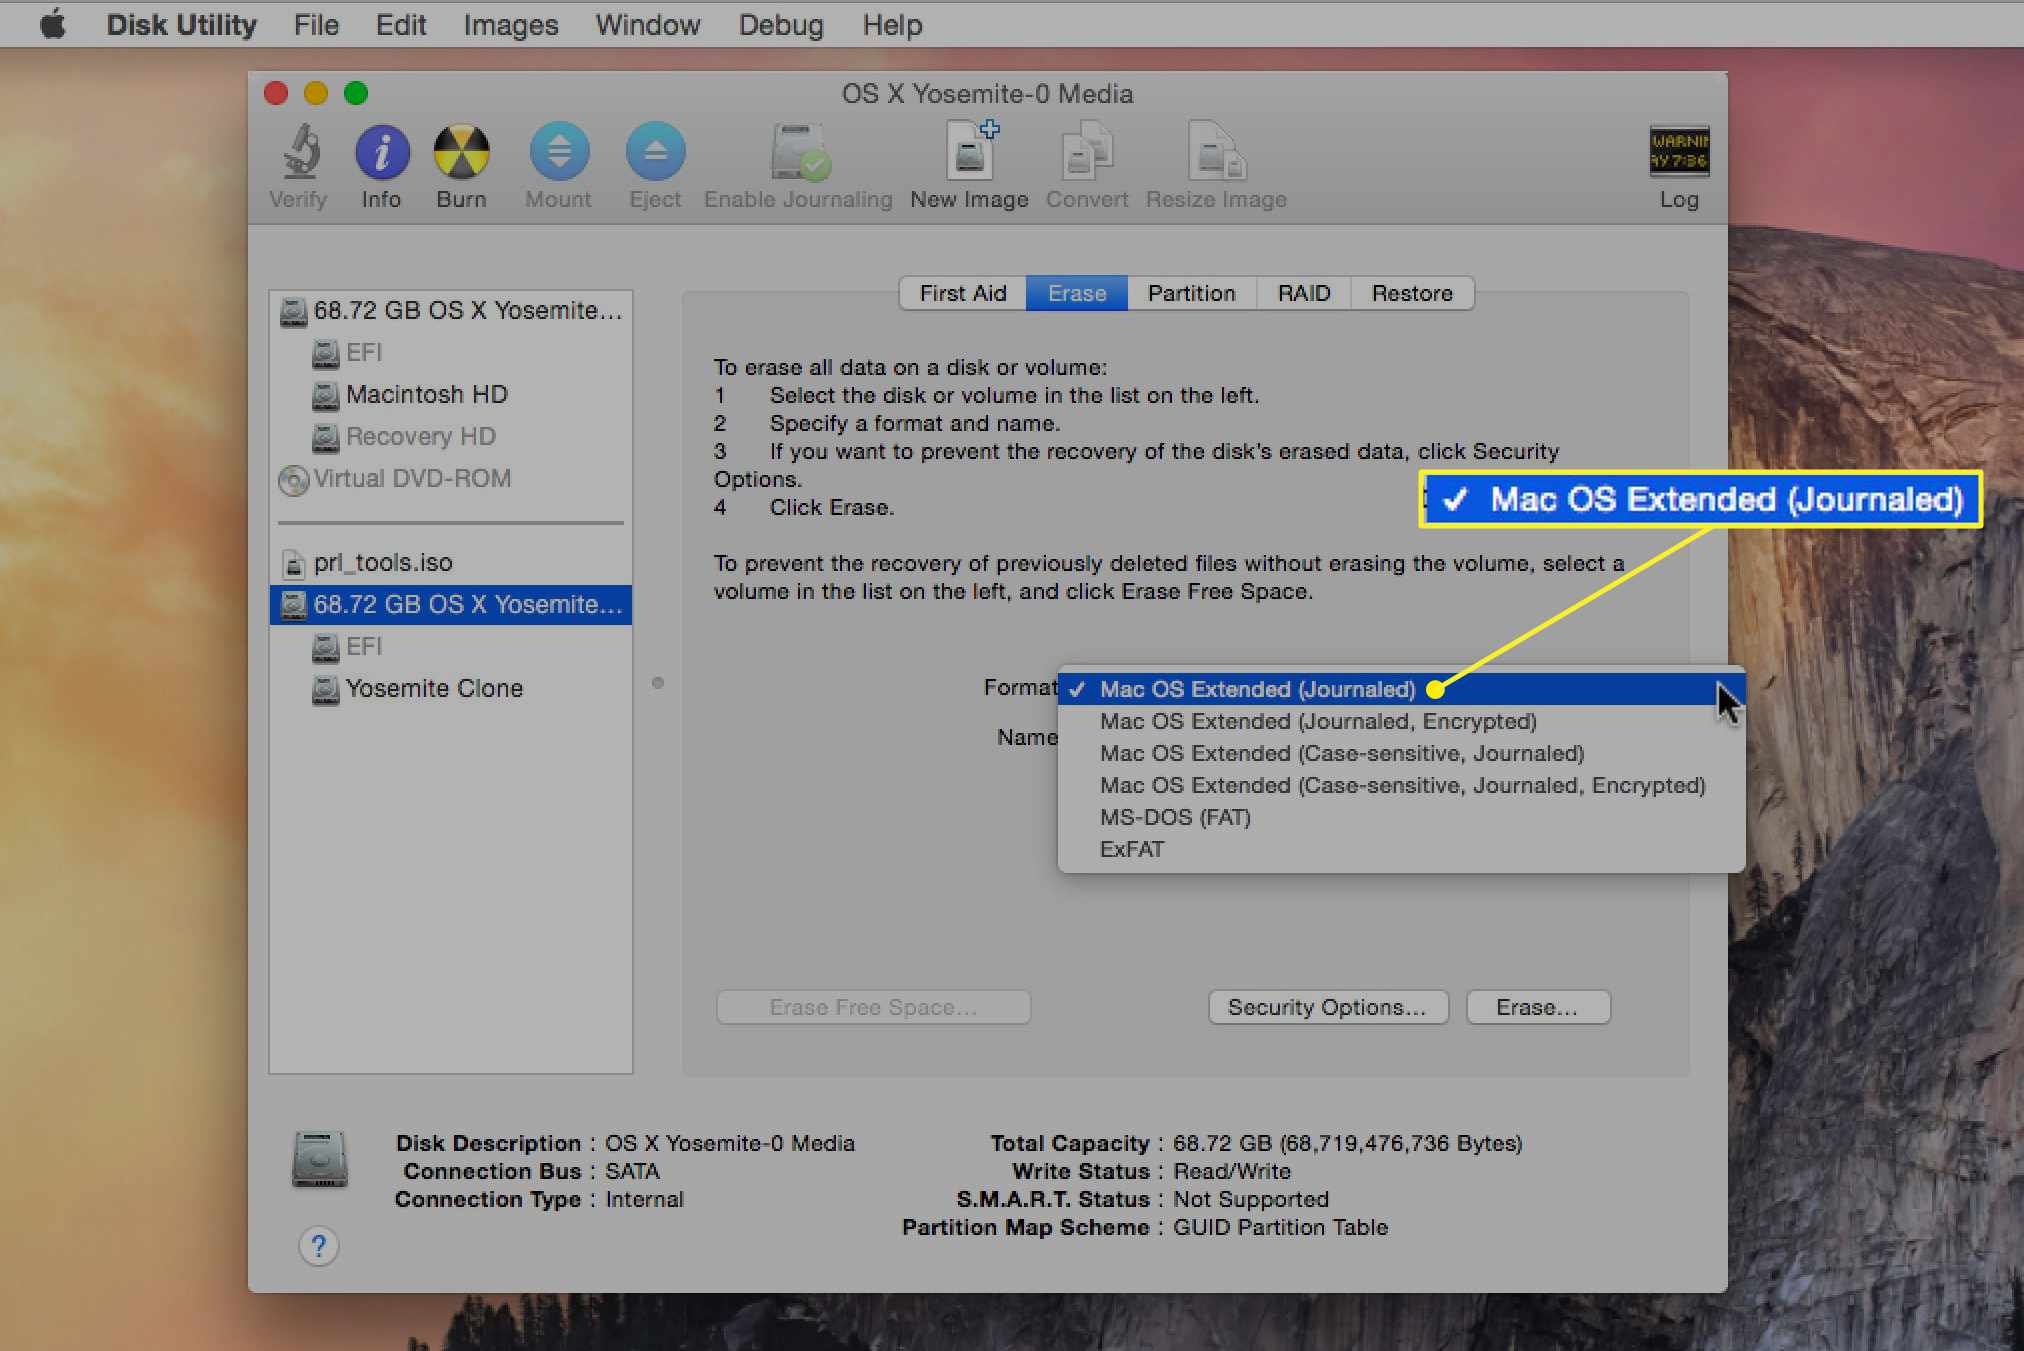 Schijfhulpprogramma met Mac OS Uitgebreid (journaled) geselecteerd als formaat